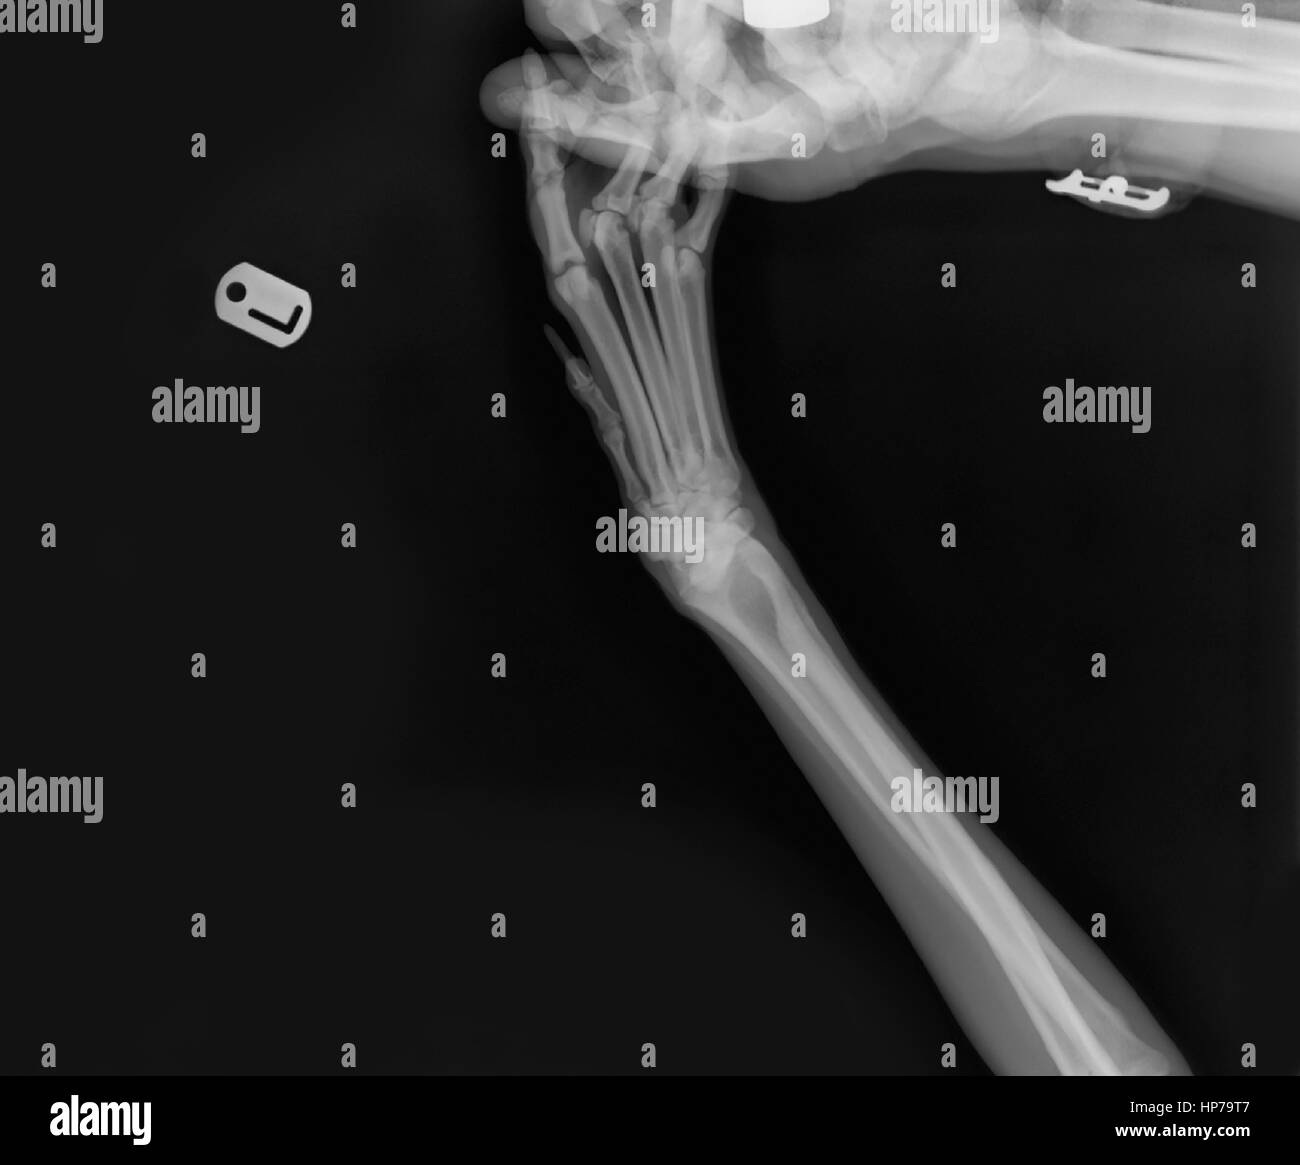 Raggi X di un cane anteriori della gamba sinistra presso un ambulatorio veterinario il tecnico la mano che tiene la zampa può essere visto Foto Stock